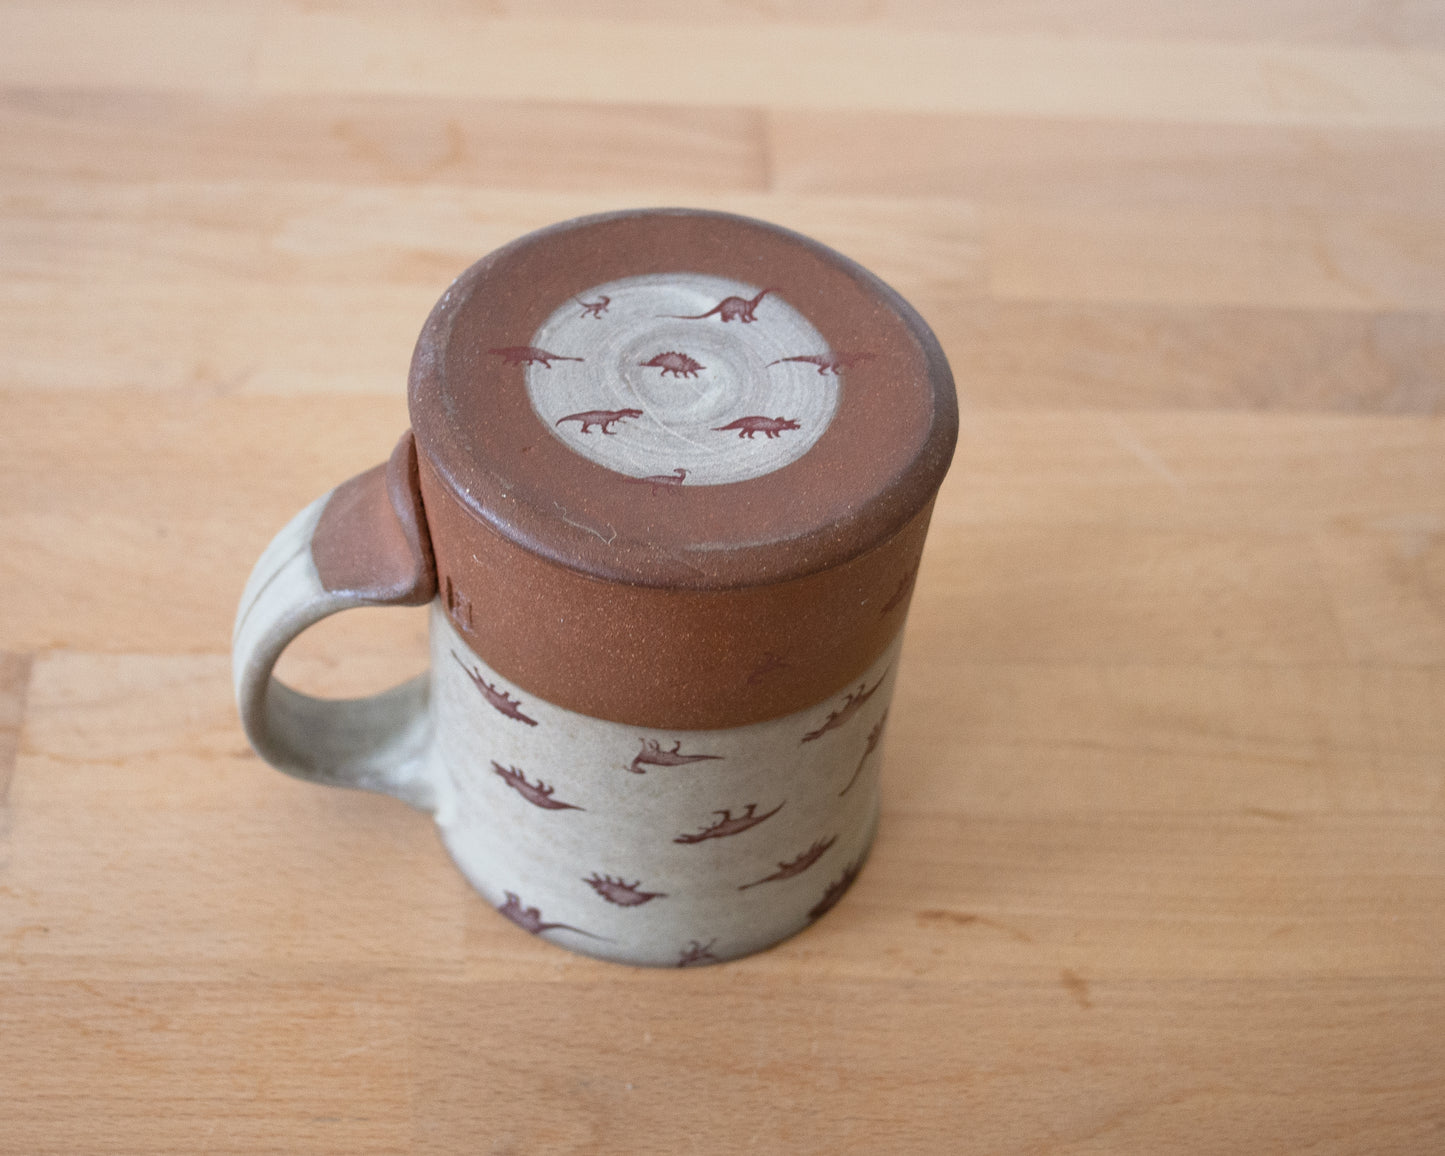 Mug with Small Dino Pattern - matte grey